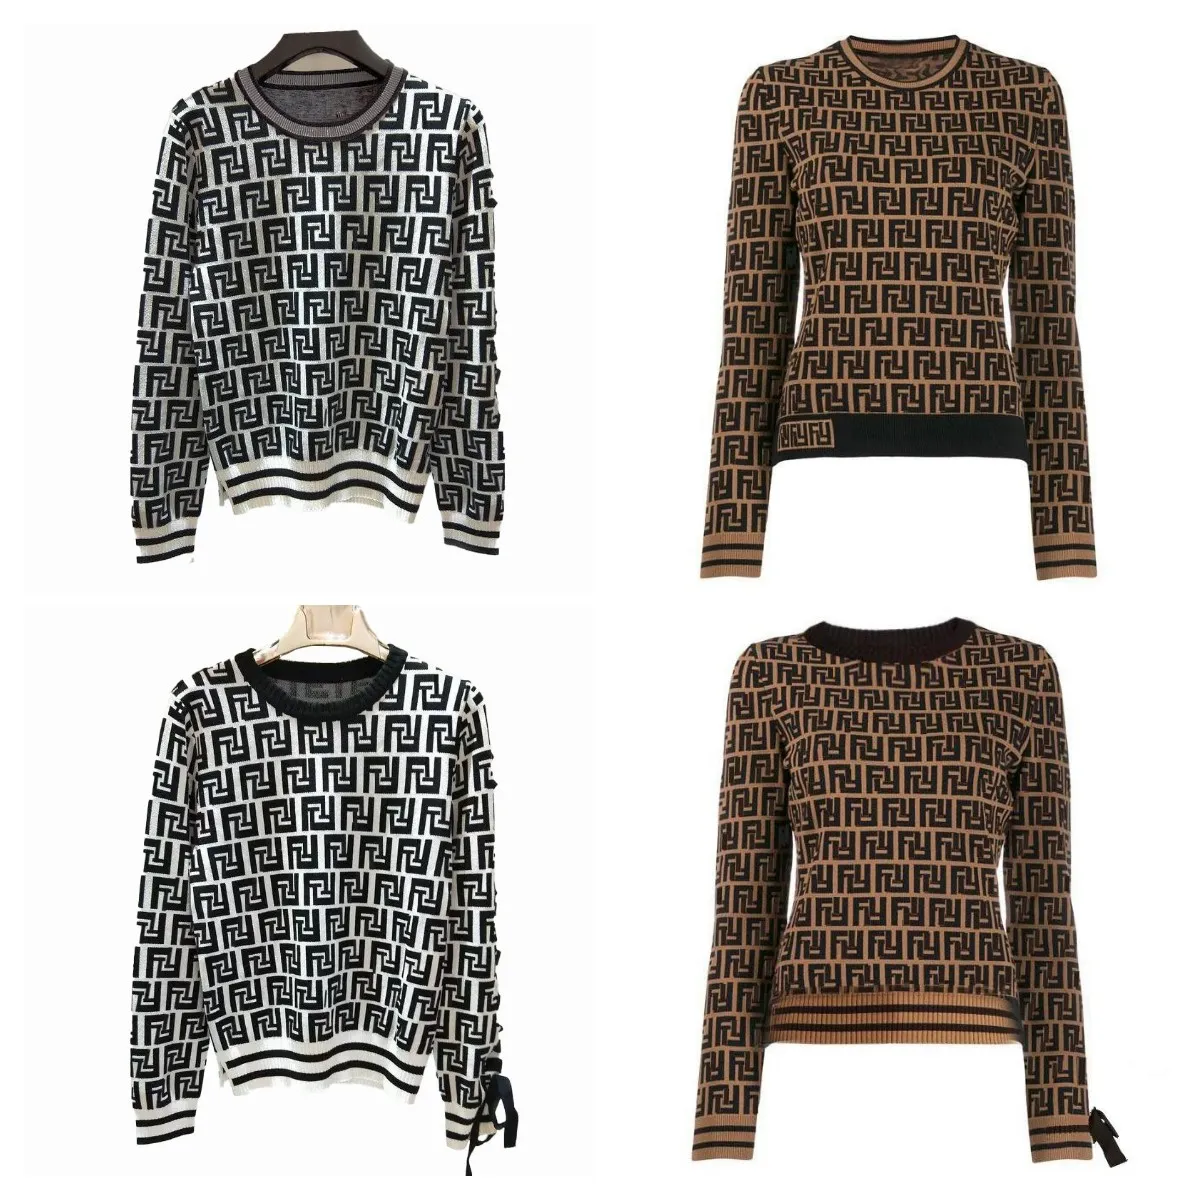 Maglioni firmati Maglioni maglione moda autunno inverno Cardigan lavorato a maglia jacquard da donna